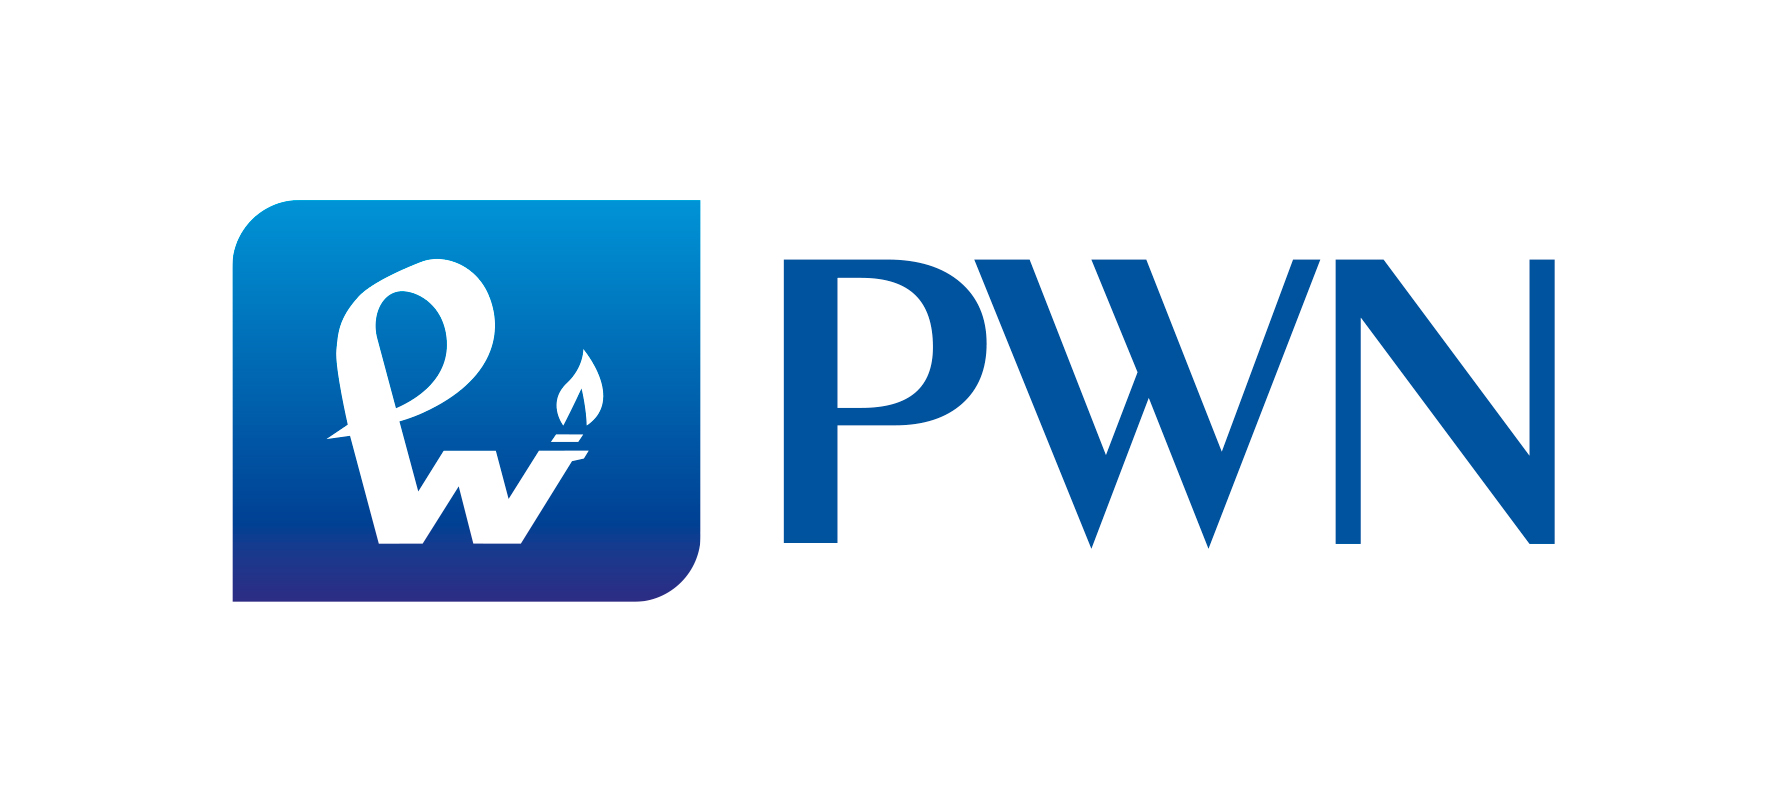 04 pwn logo rgb